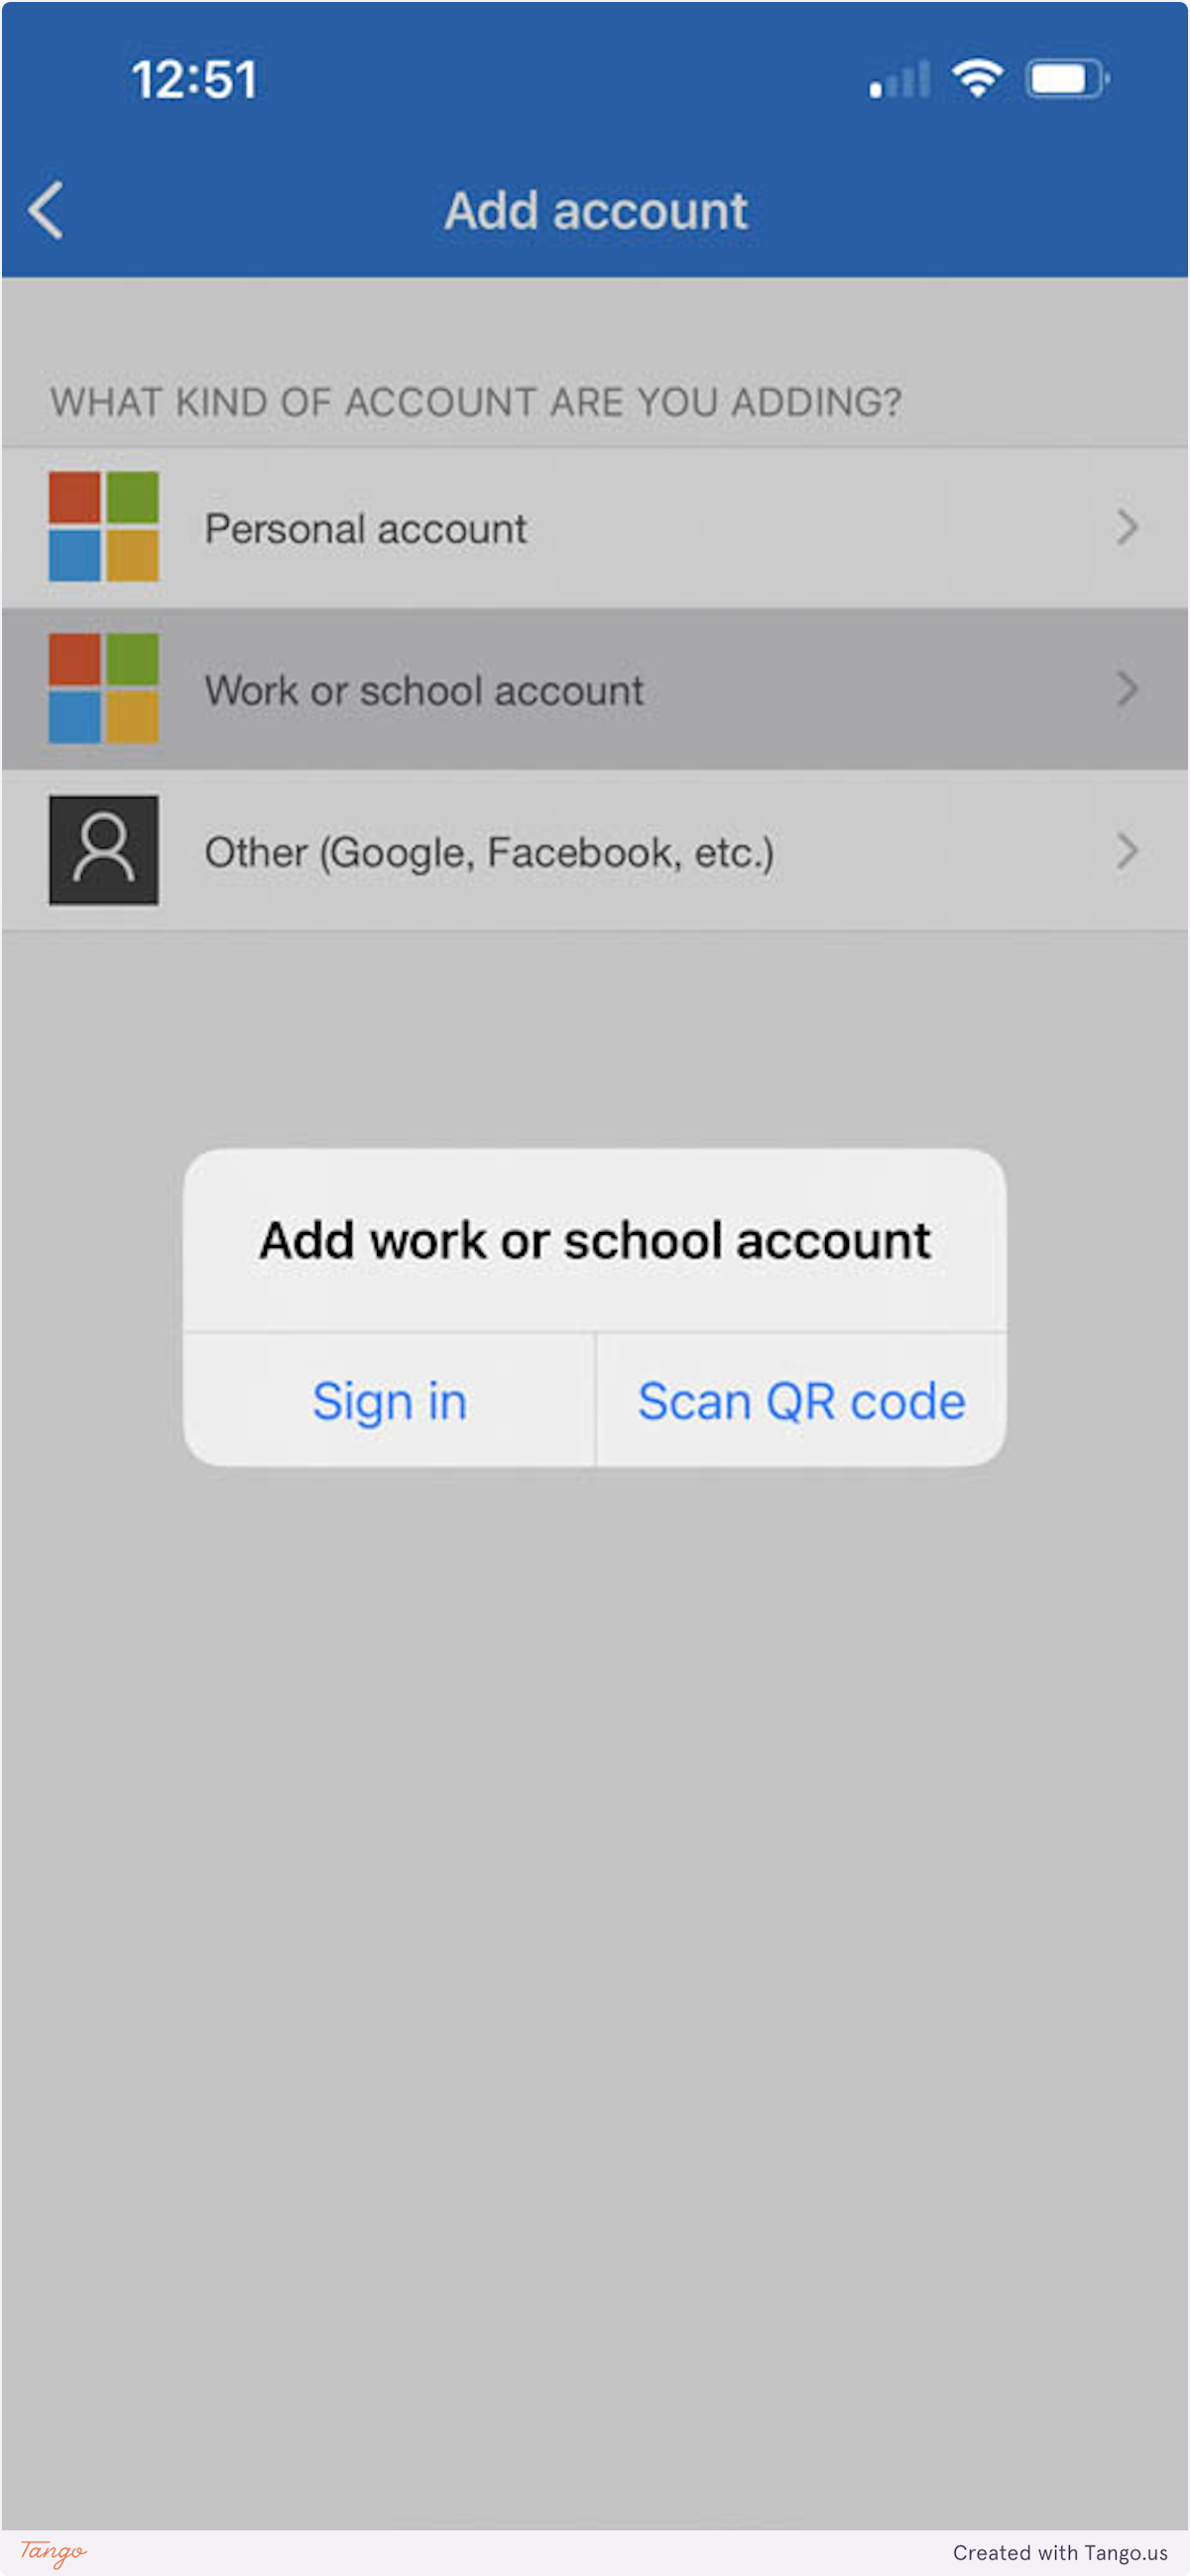 Choose work or school account, then scan QR code